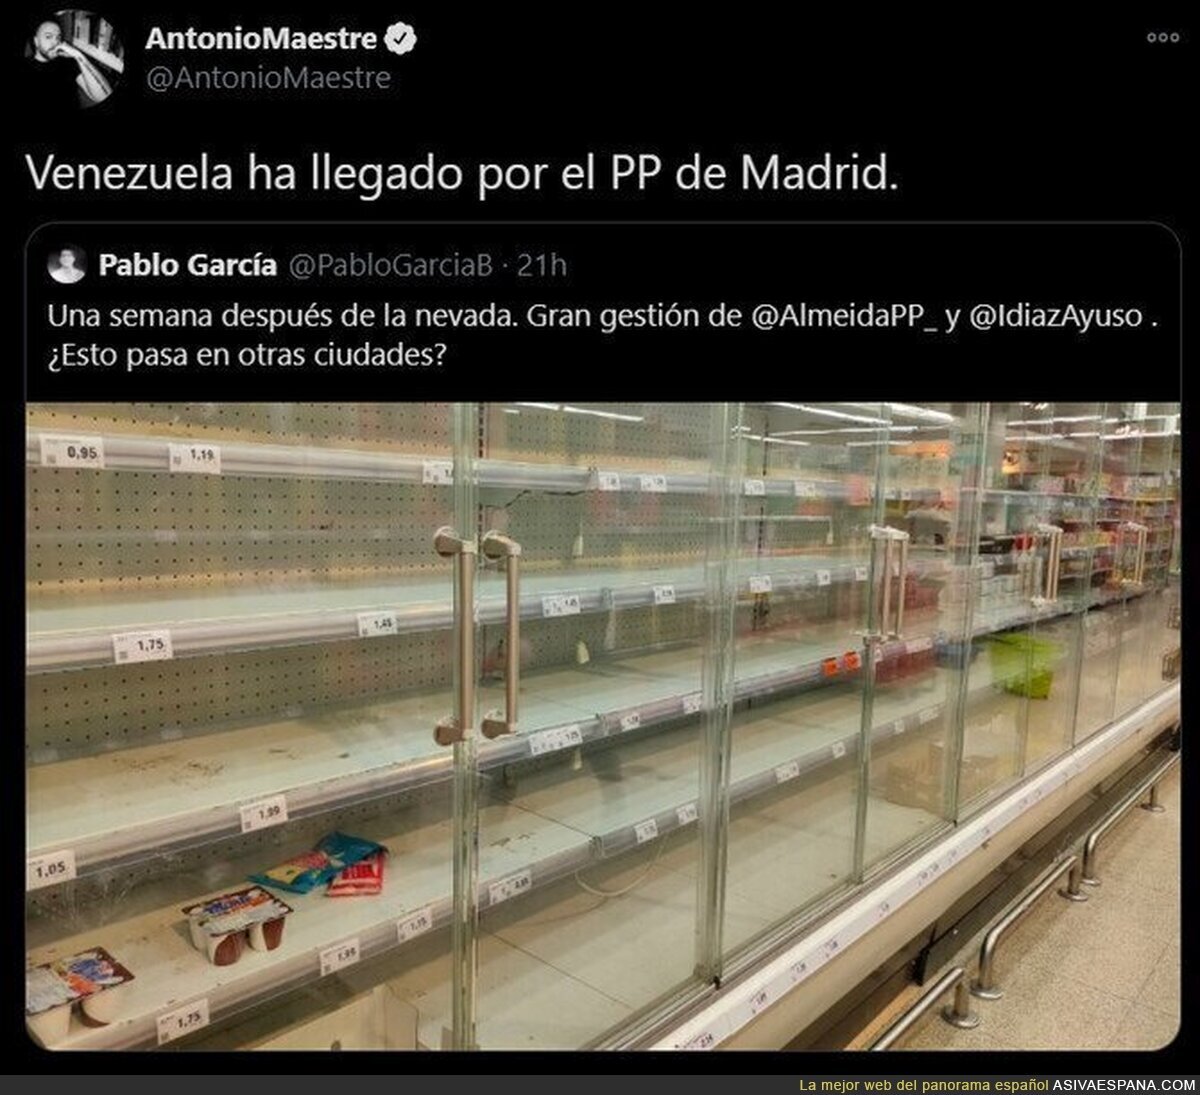 La miseria y pobreza ha llegado a Madrid